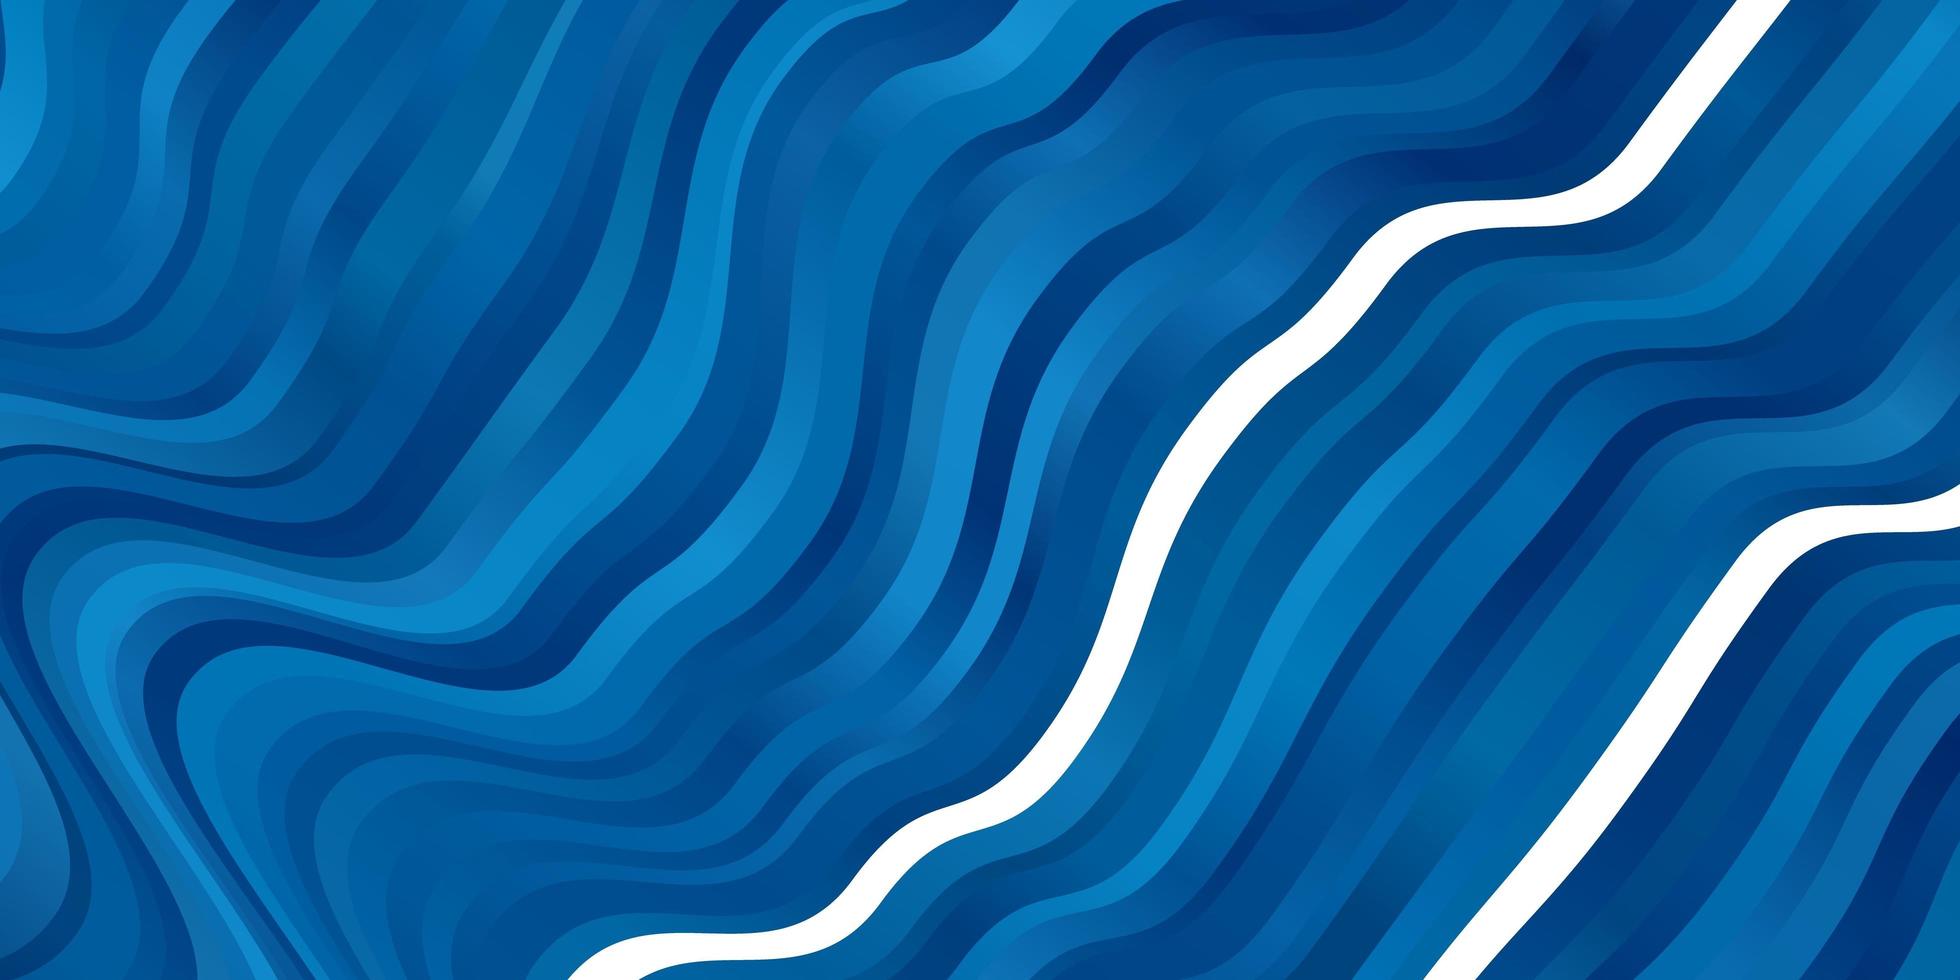 layout de vetor de azul claro com linhas irônicas.